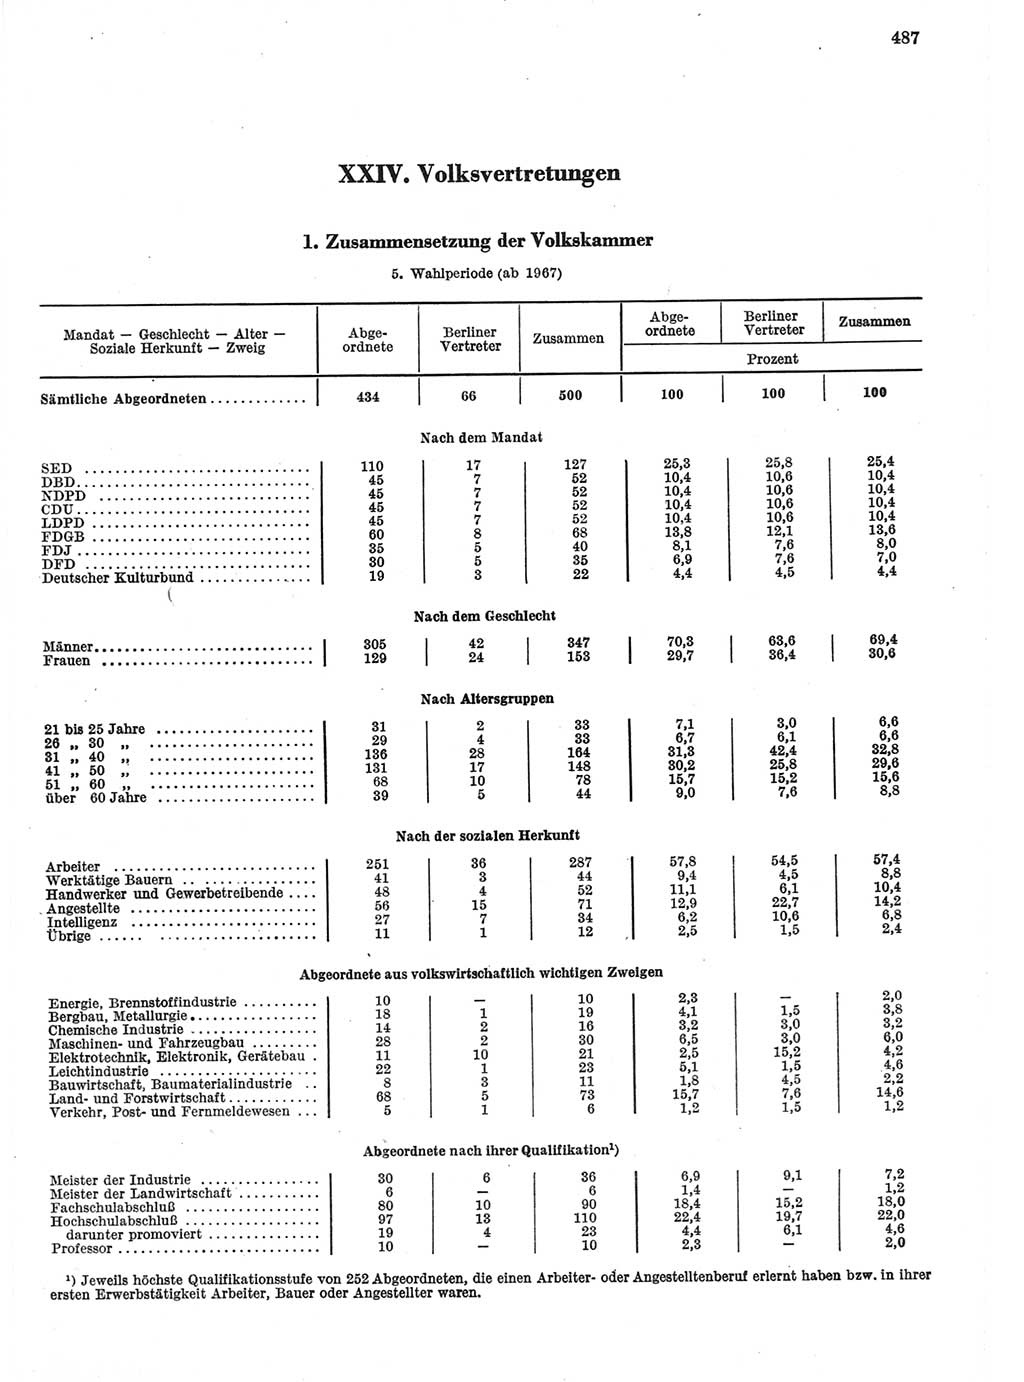 Statistisches Jahrbuch der Deutschen Demokratischen Republik (DDR) 1970, Seite 487 (Stat. Jb. DDR 1970, S. 487)